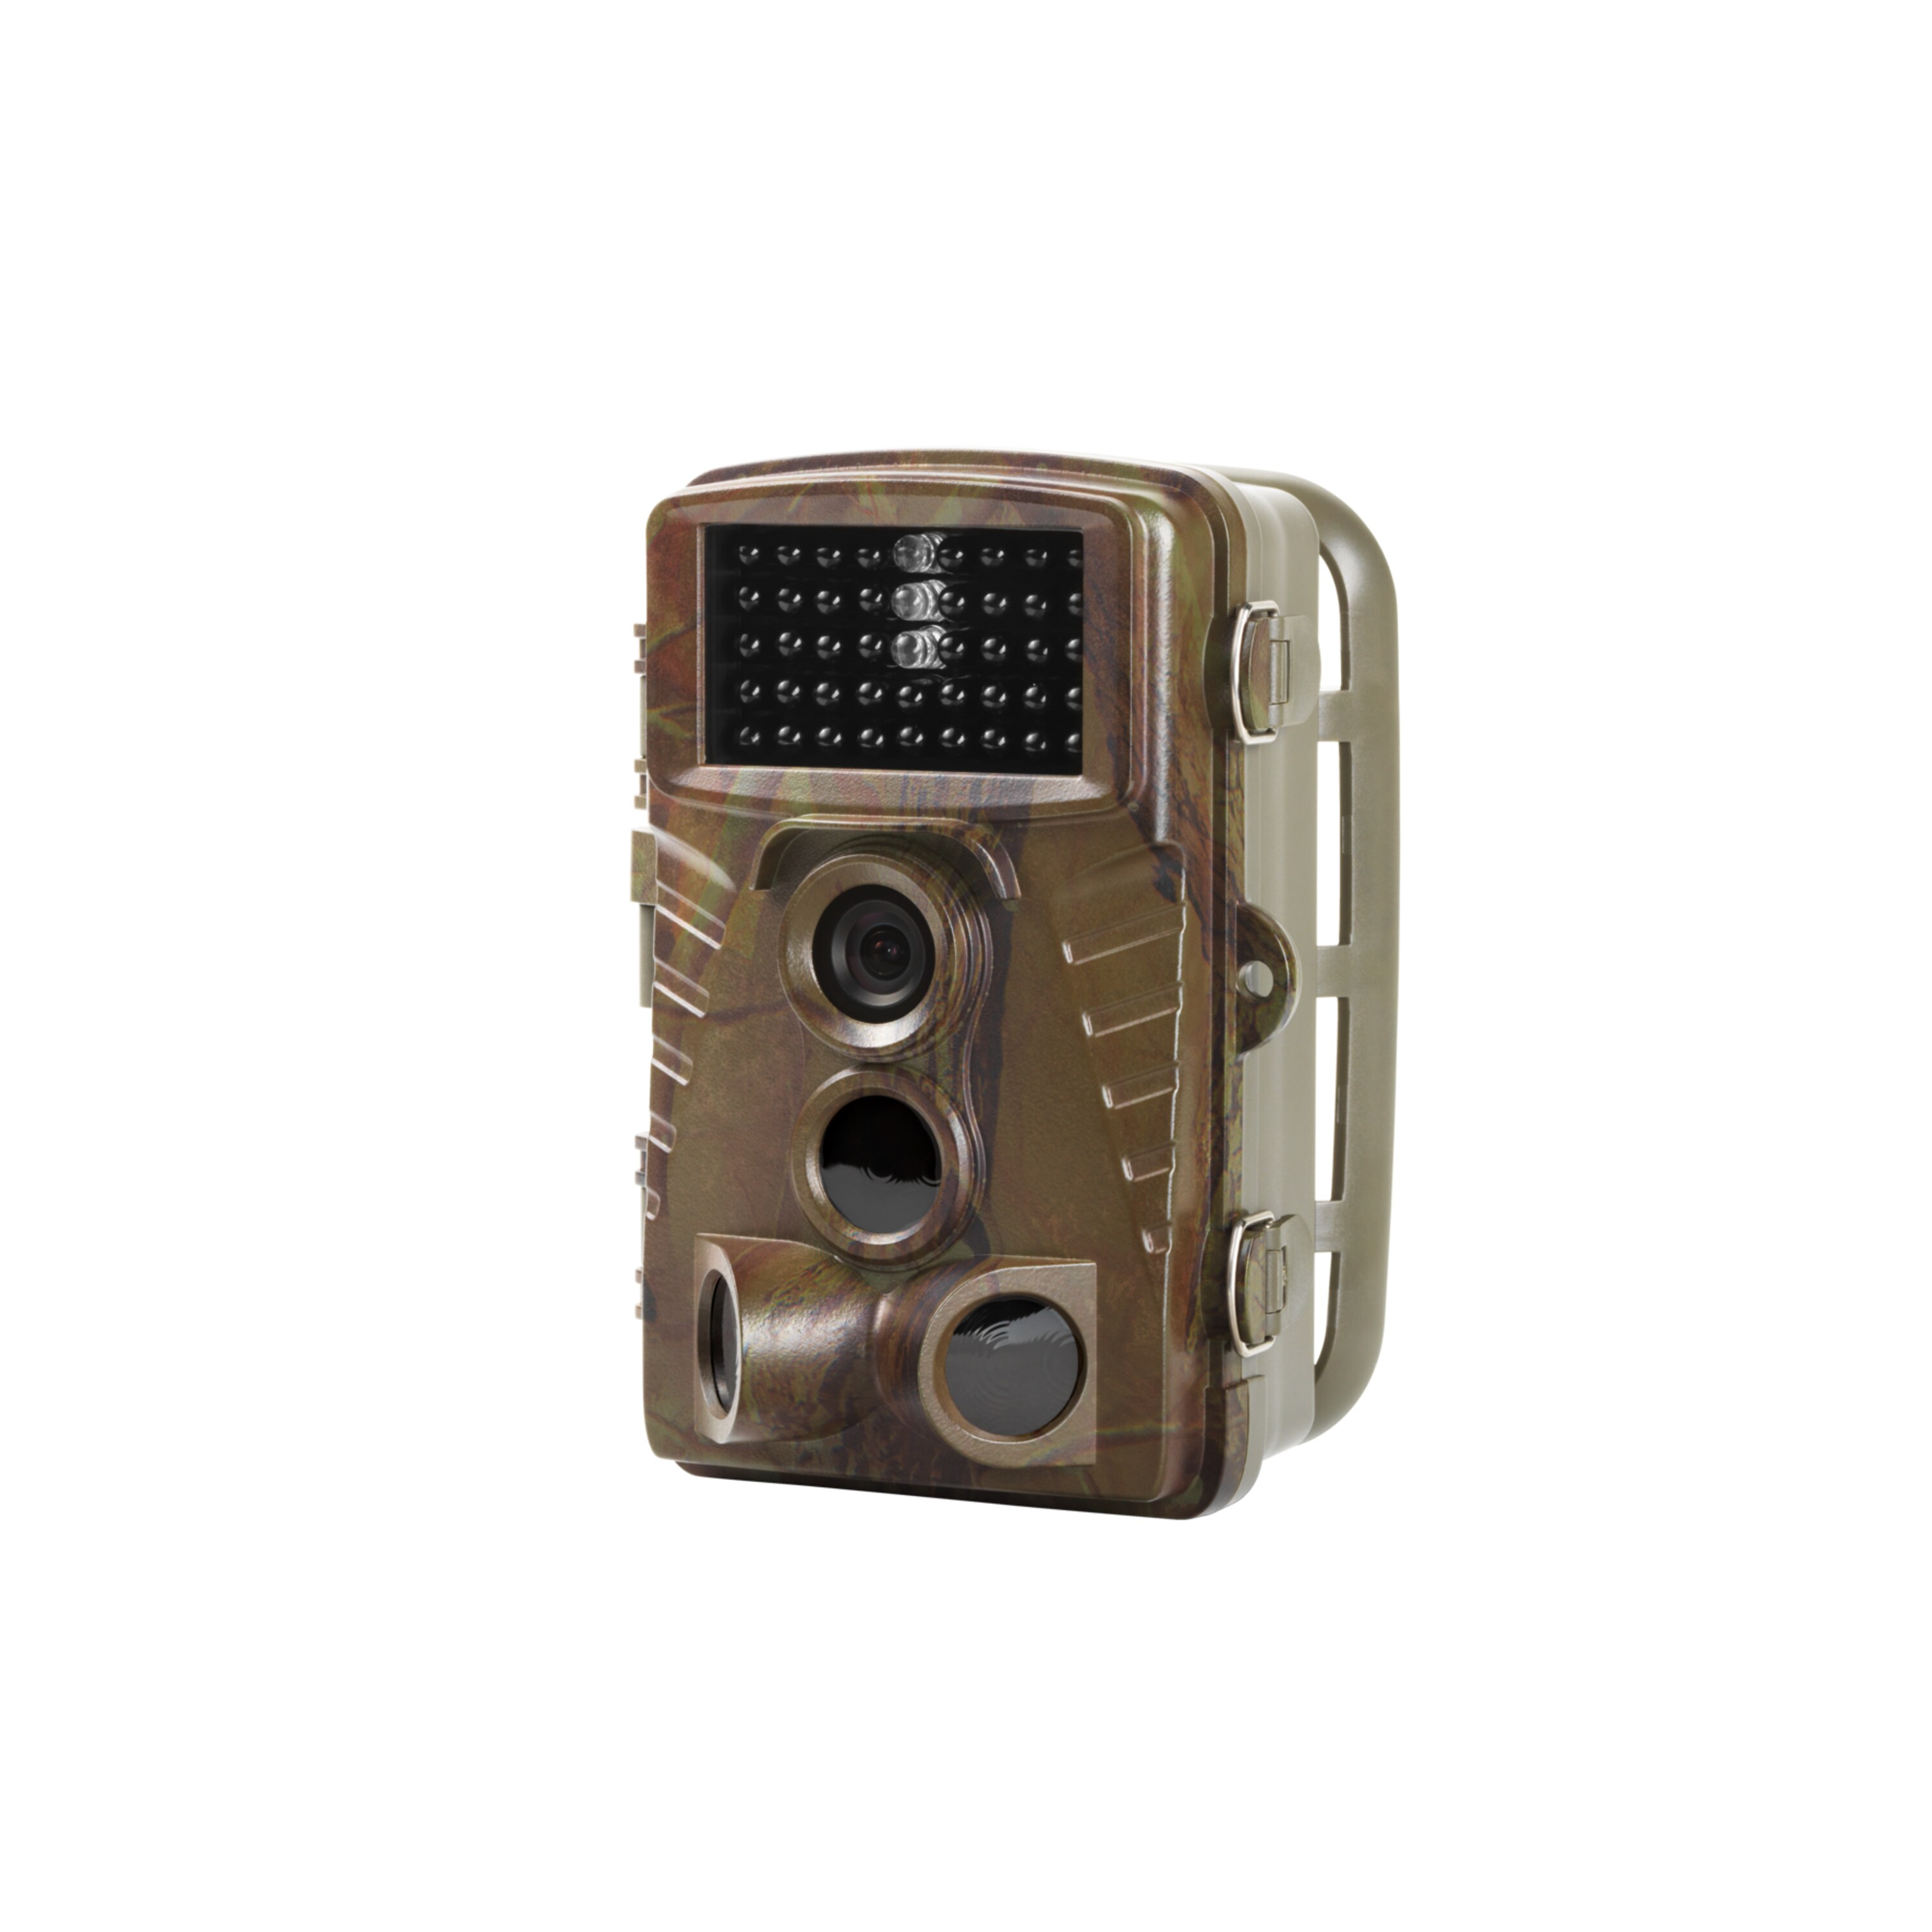 MEDION® Wildkamera S47119, 6,1 cm (2,4'') TFT-Display, 5 Megapixel, spritzwassergeschützt, Bewegungsmelder, getarntes Gehäuse